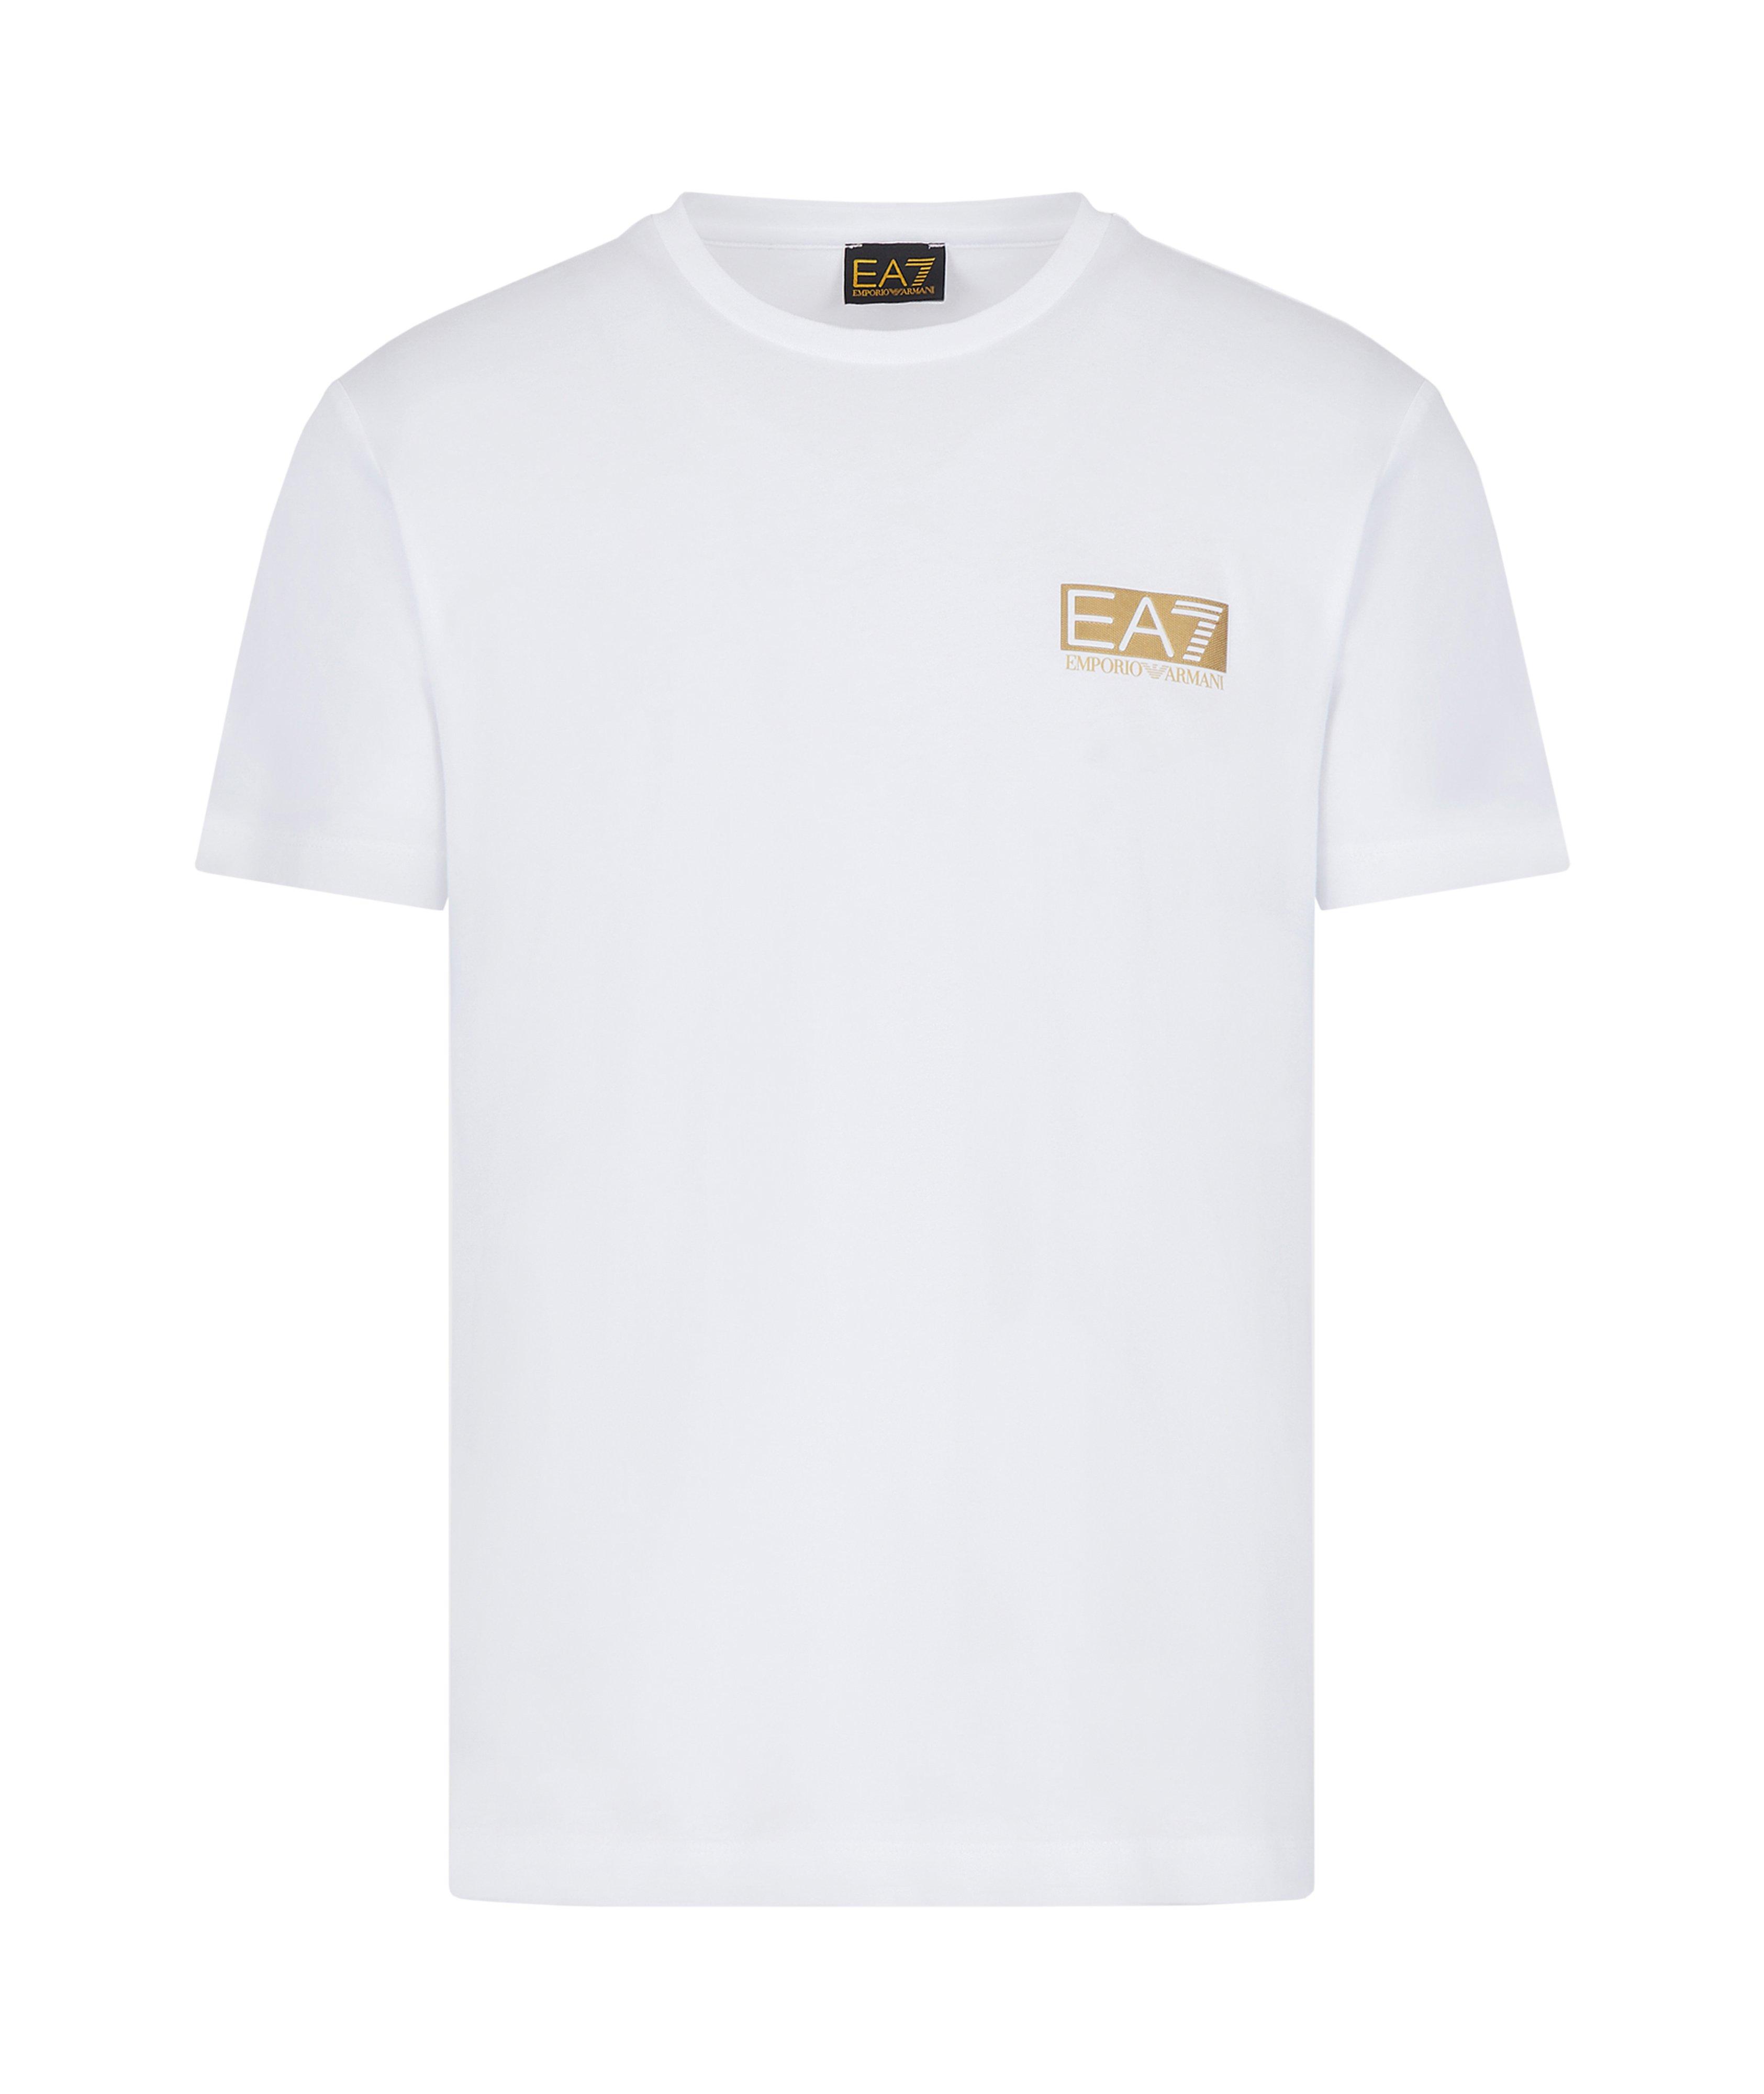 EA7 Cotton T-Shirt image 0